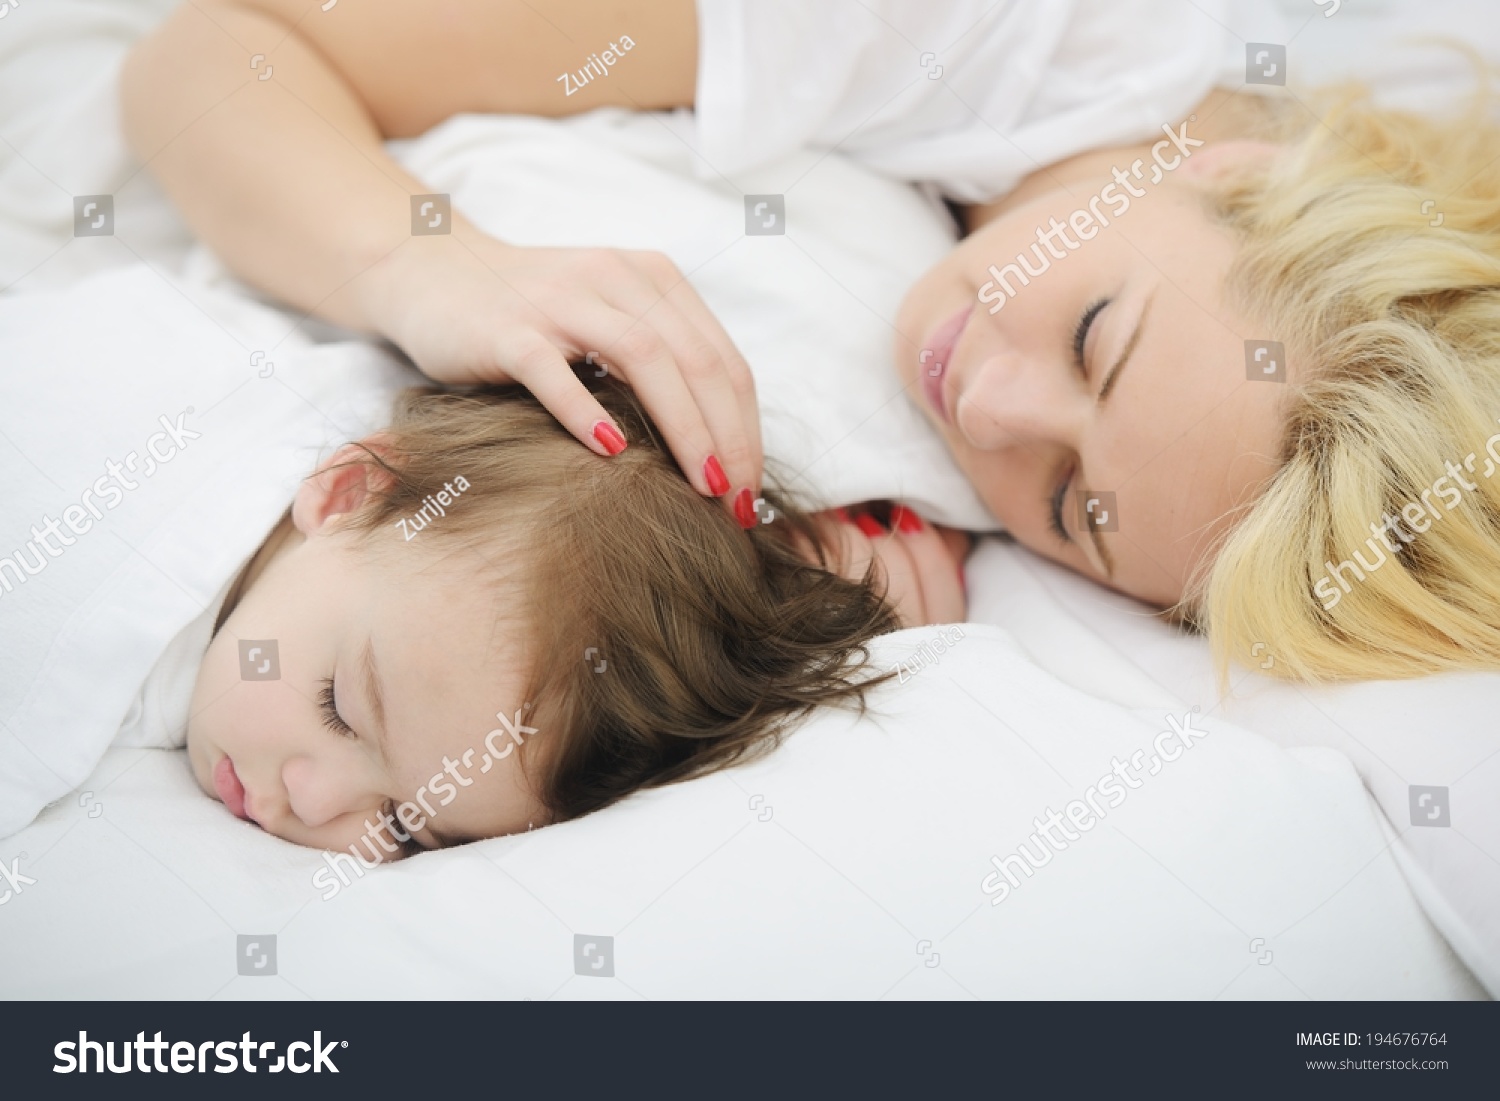 Спящие мамаши. Картинка мама спит. Мать у кровати ребенка. Сонная ли.